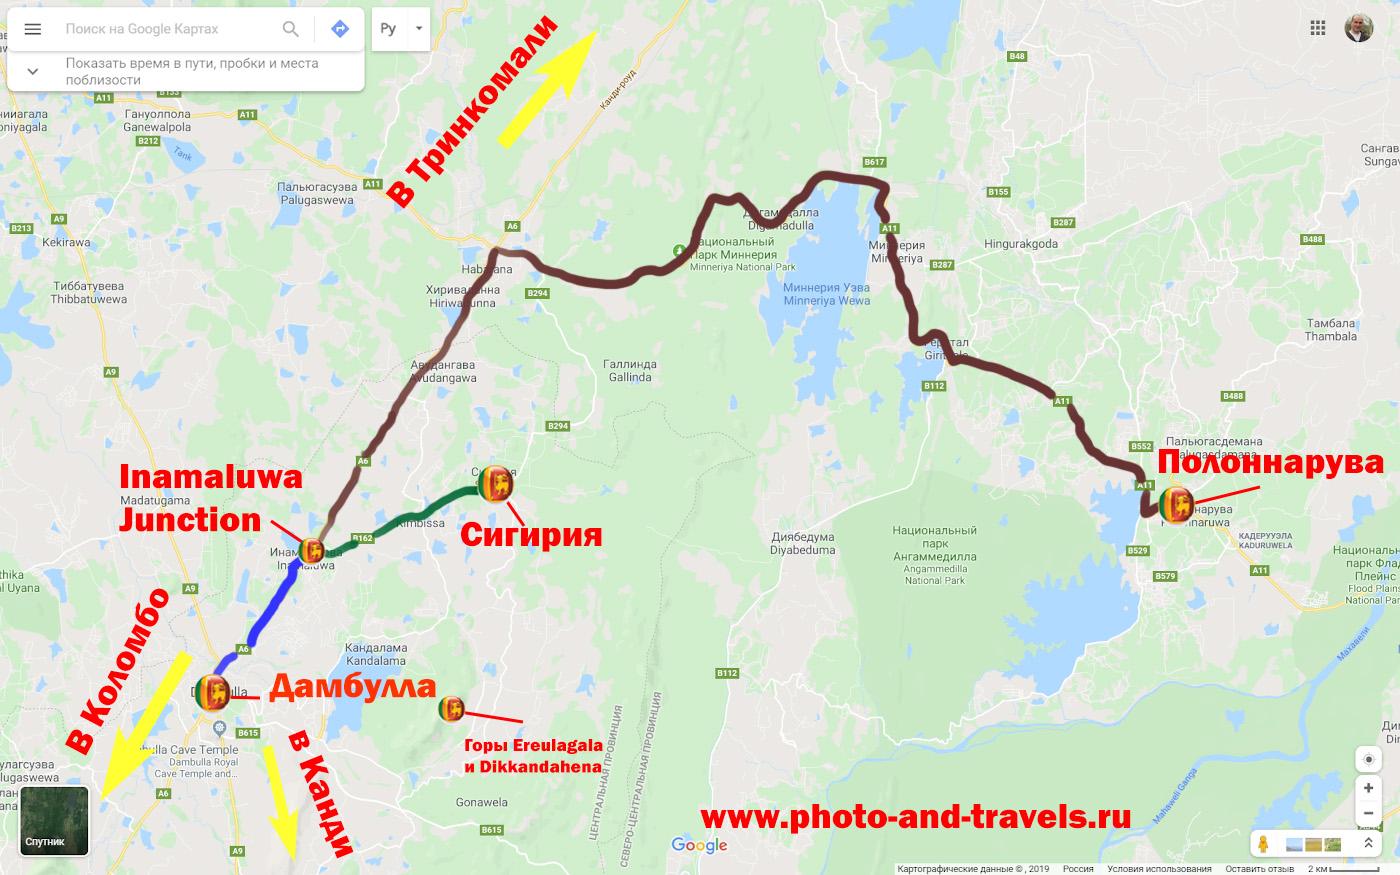 14. Схема, поясняющая как добраться в Сигирию на автобусе из города Дамбулла (Dambulla) или из Полоннарува (Polonnaruwa). Во втором случае требуется пересадка в городке Инамальюва (Inamaluwa).